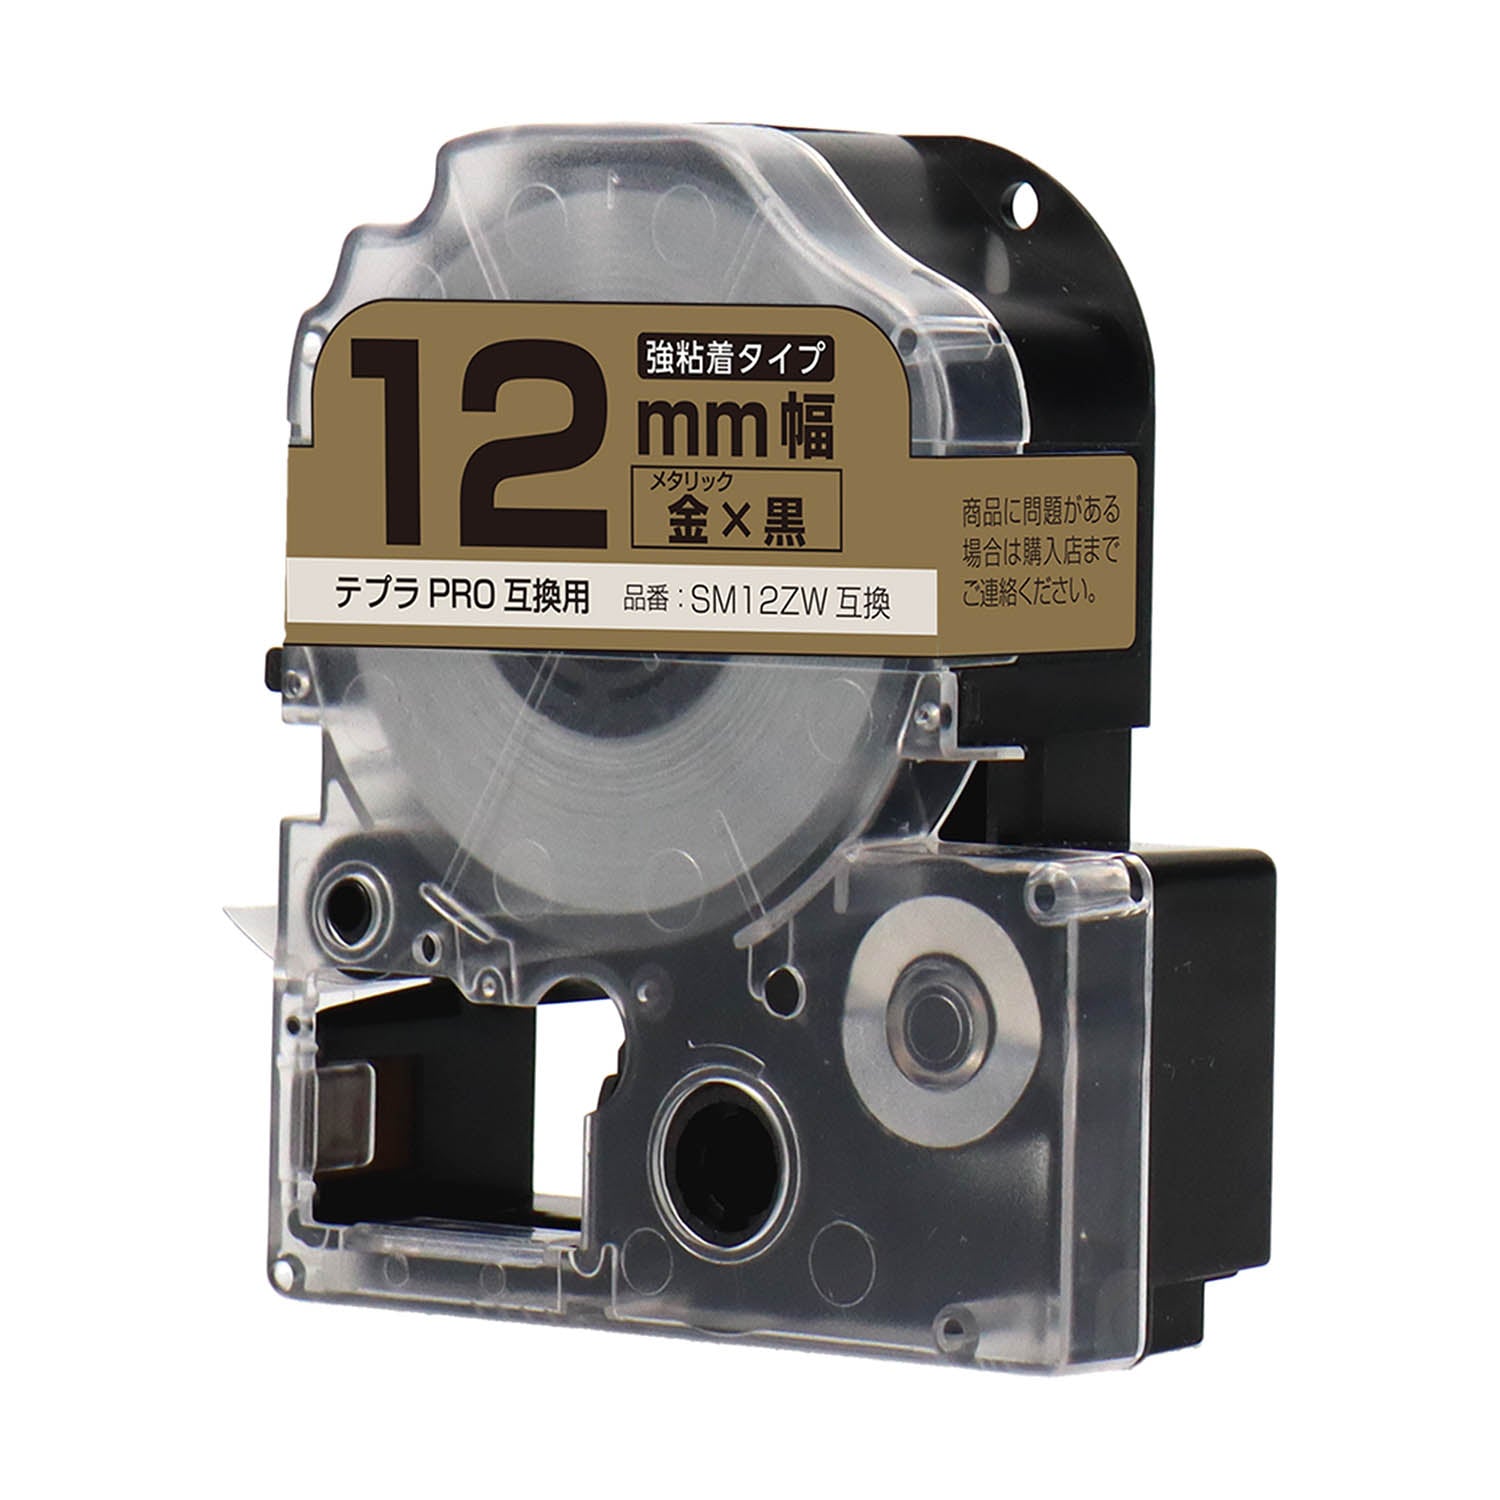 テプラPRO用互換テープカートリッジ メタリック金×黒文字 12mm